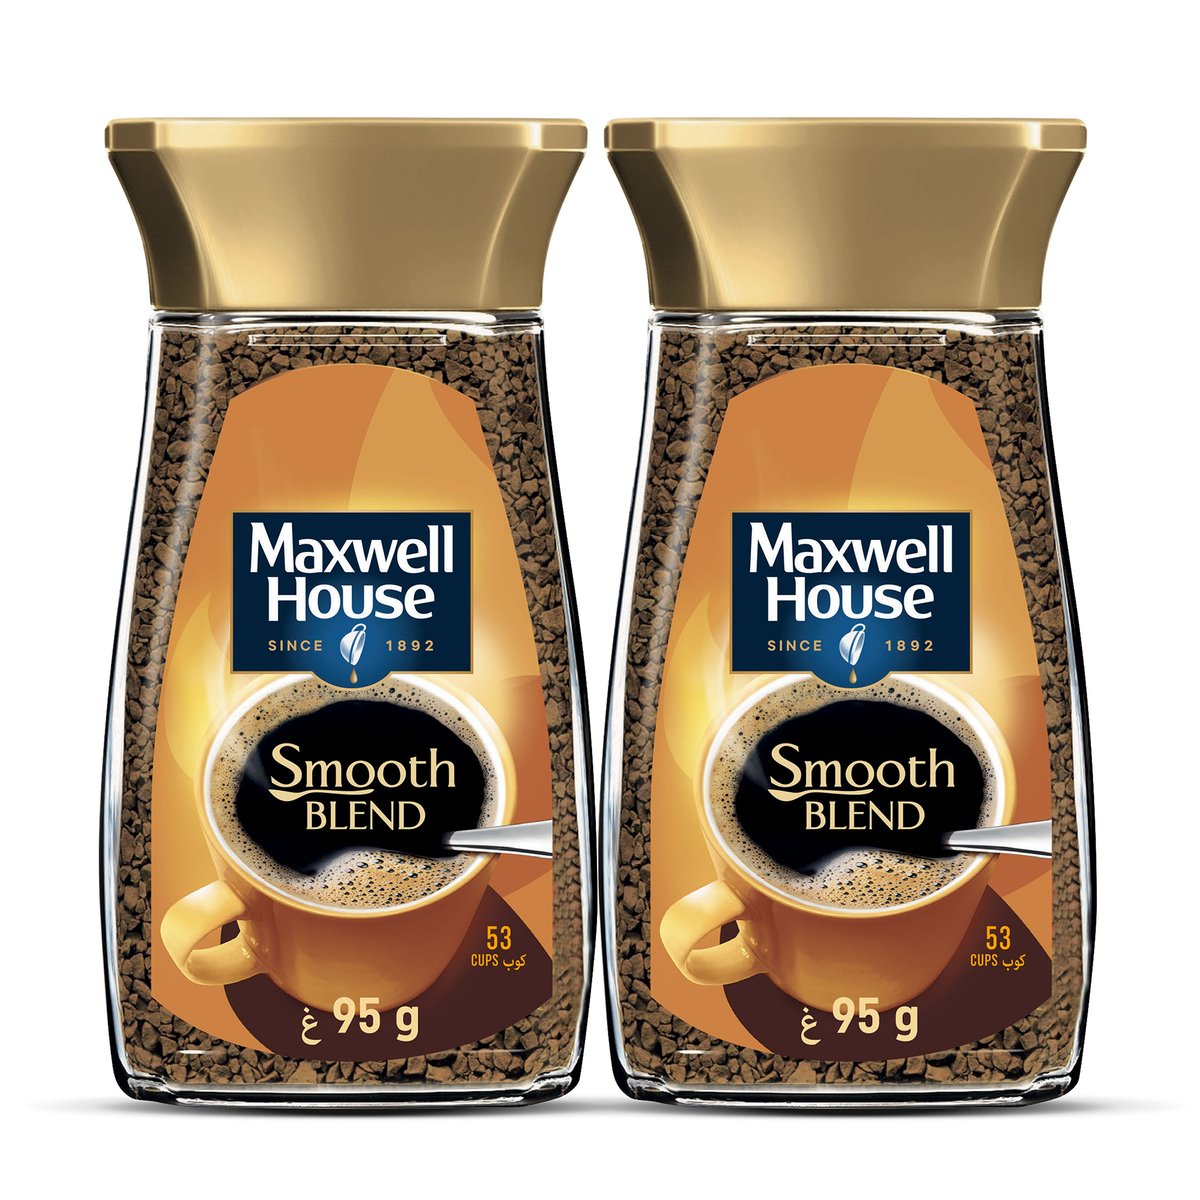 اشتري قم بشراء ماكسويل هاوس قهوة سريعة الذوبان 2 × 95جم Online at Best Price من الموقع - من لولو هايبر ماركت Coffee في الامارات